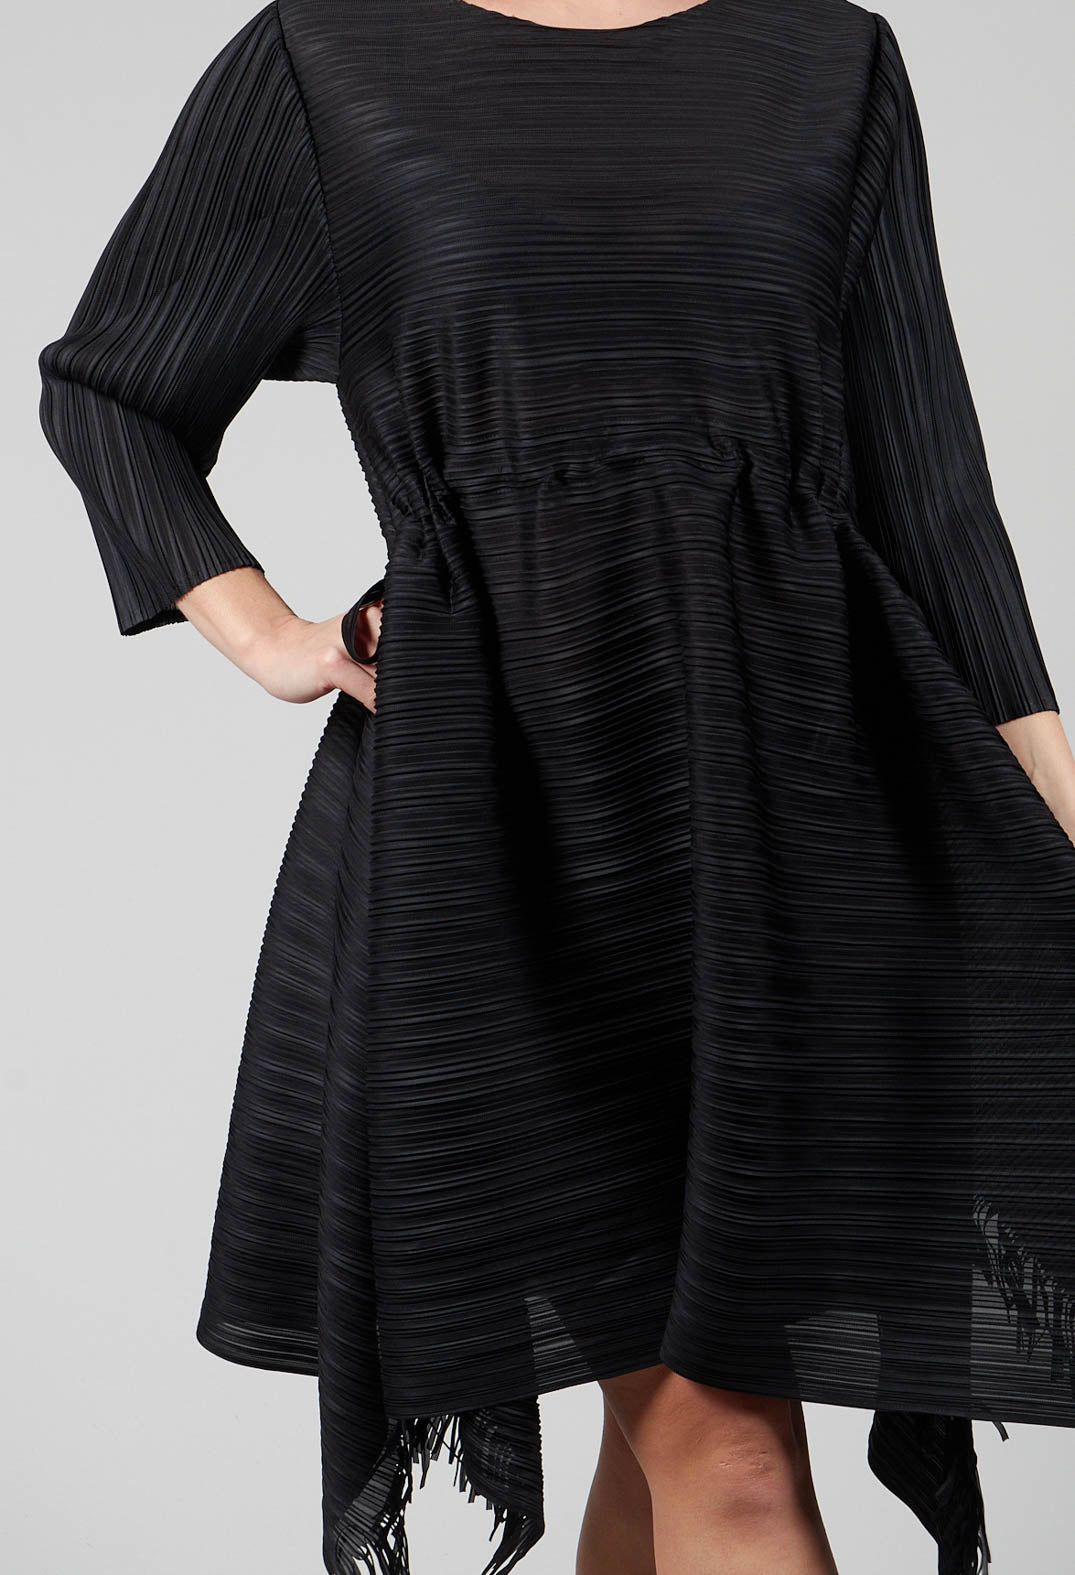 Fringe Dress in Black